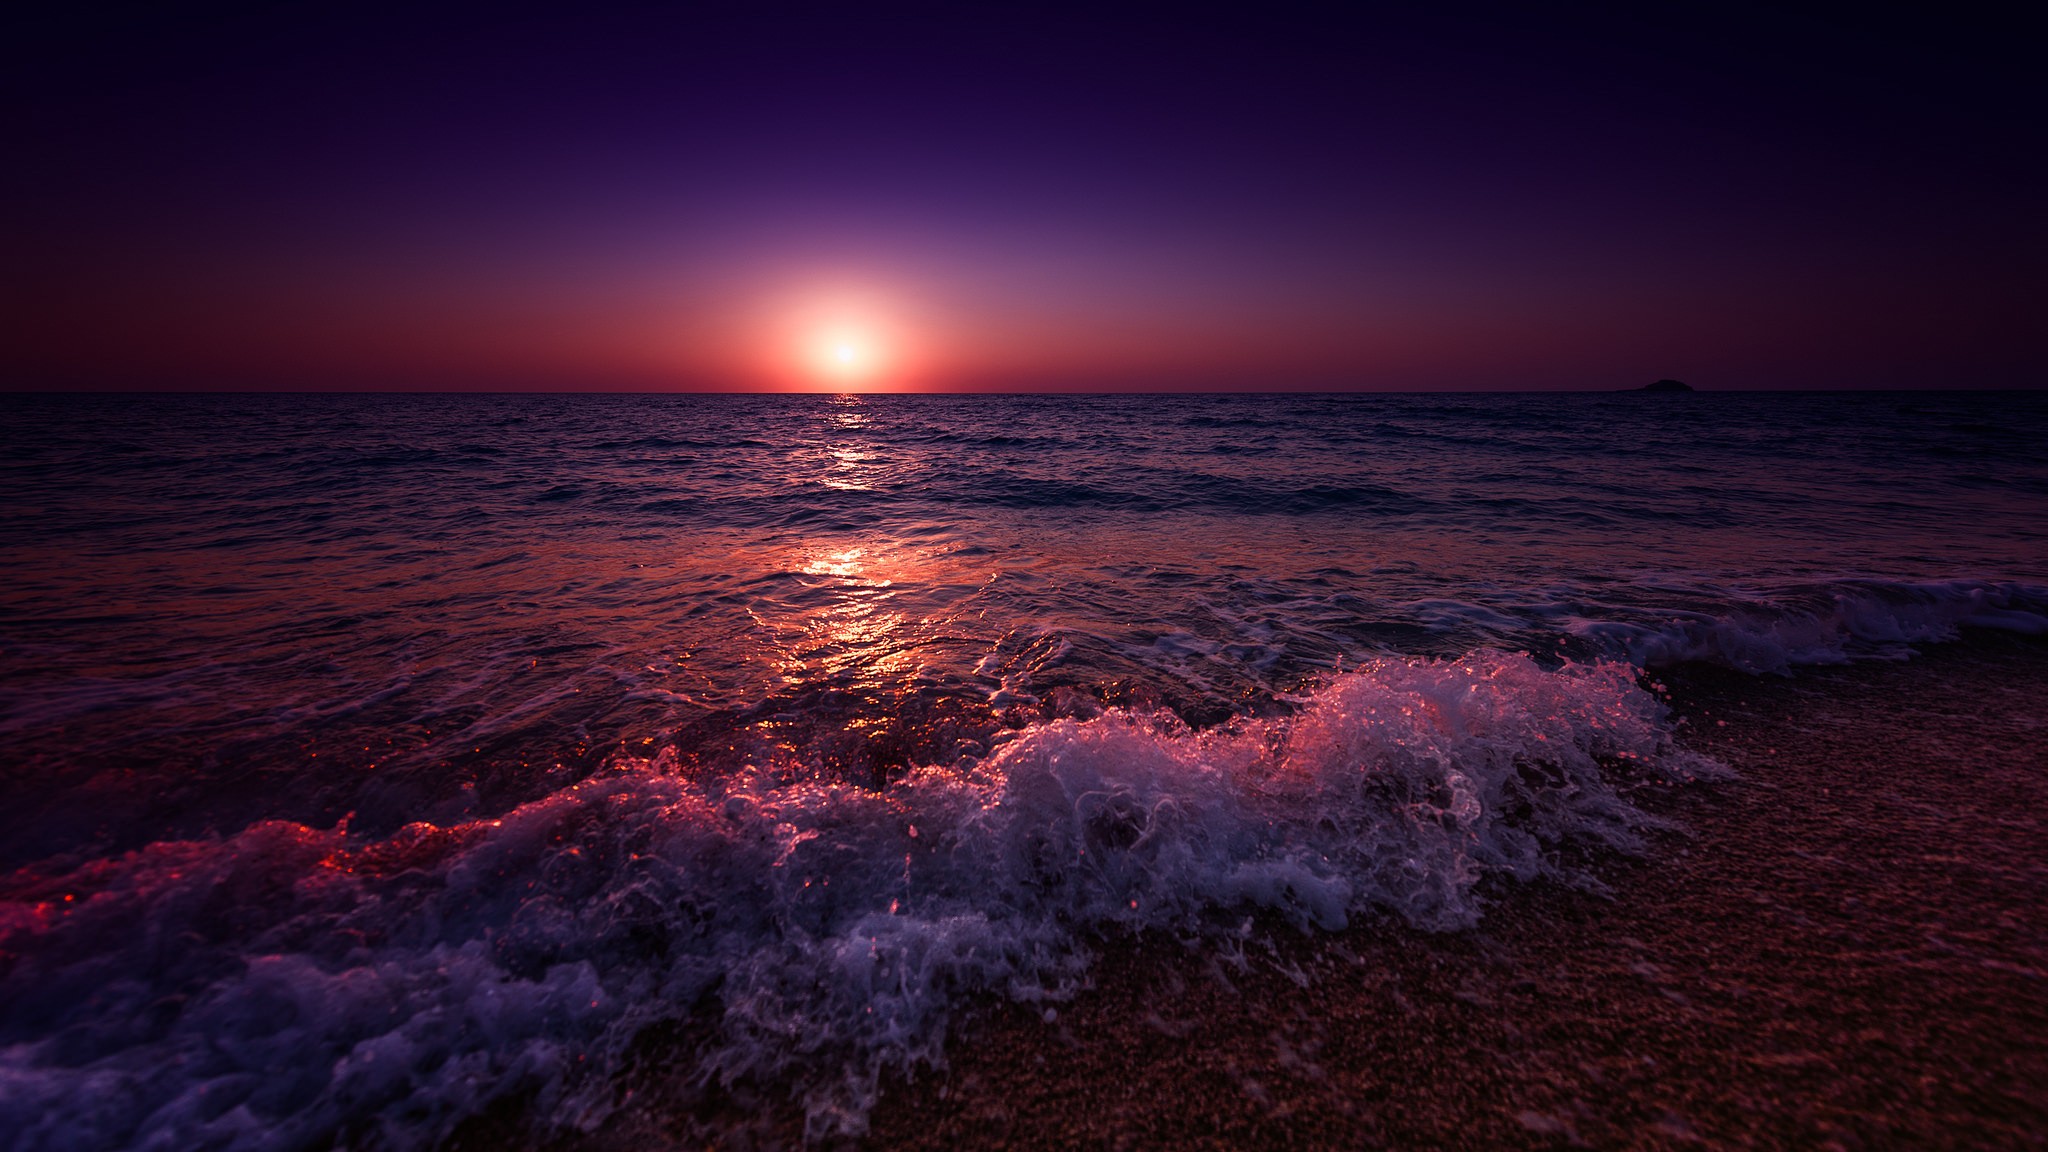 General 2048x1152 sea landscape beach sunset purple sky skyscape